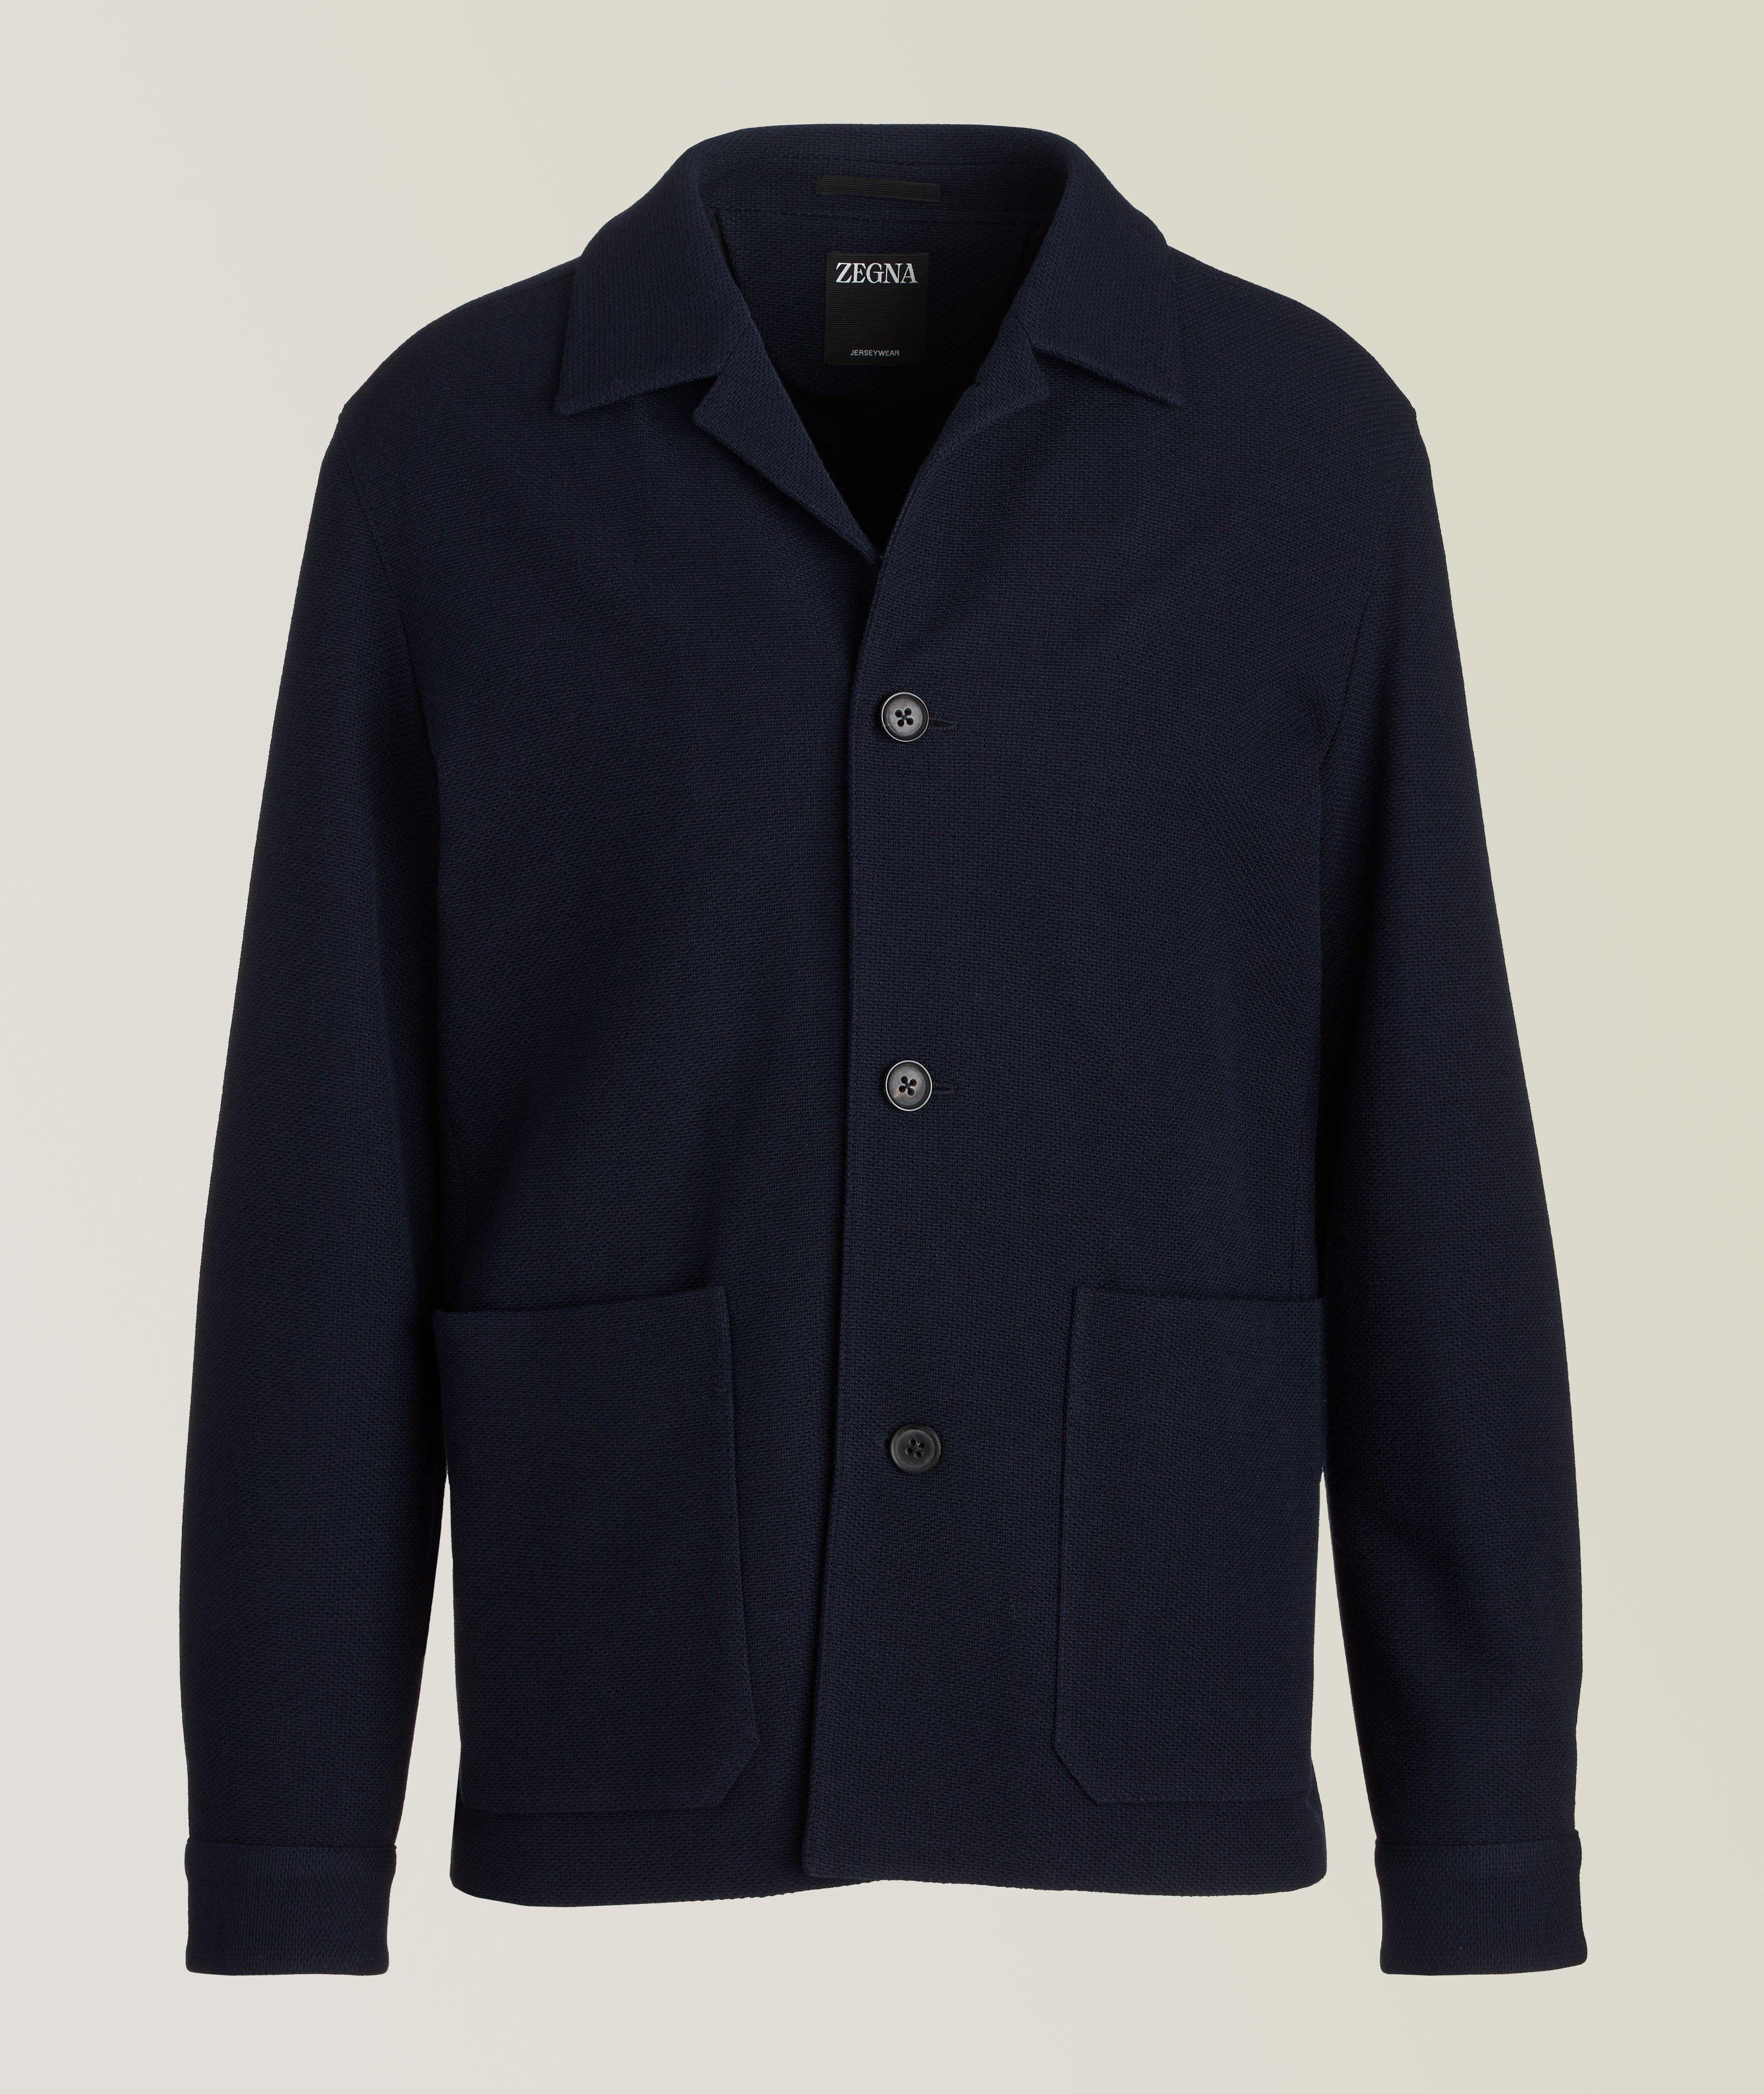 Blazer en coton et en laine, collection Jerseywear image 0